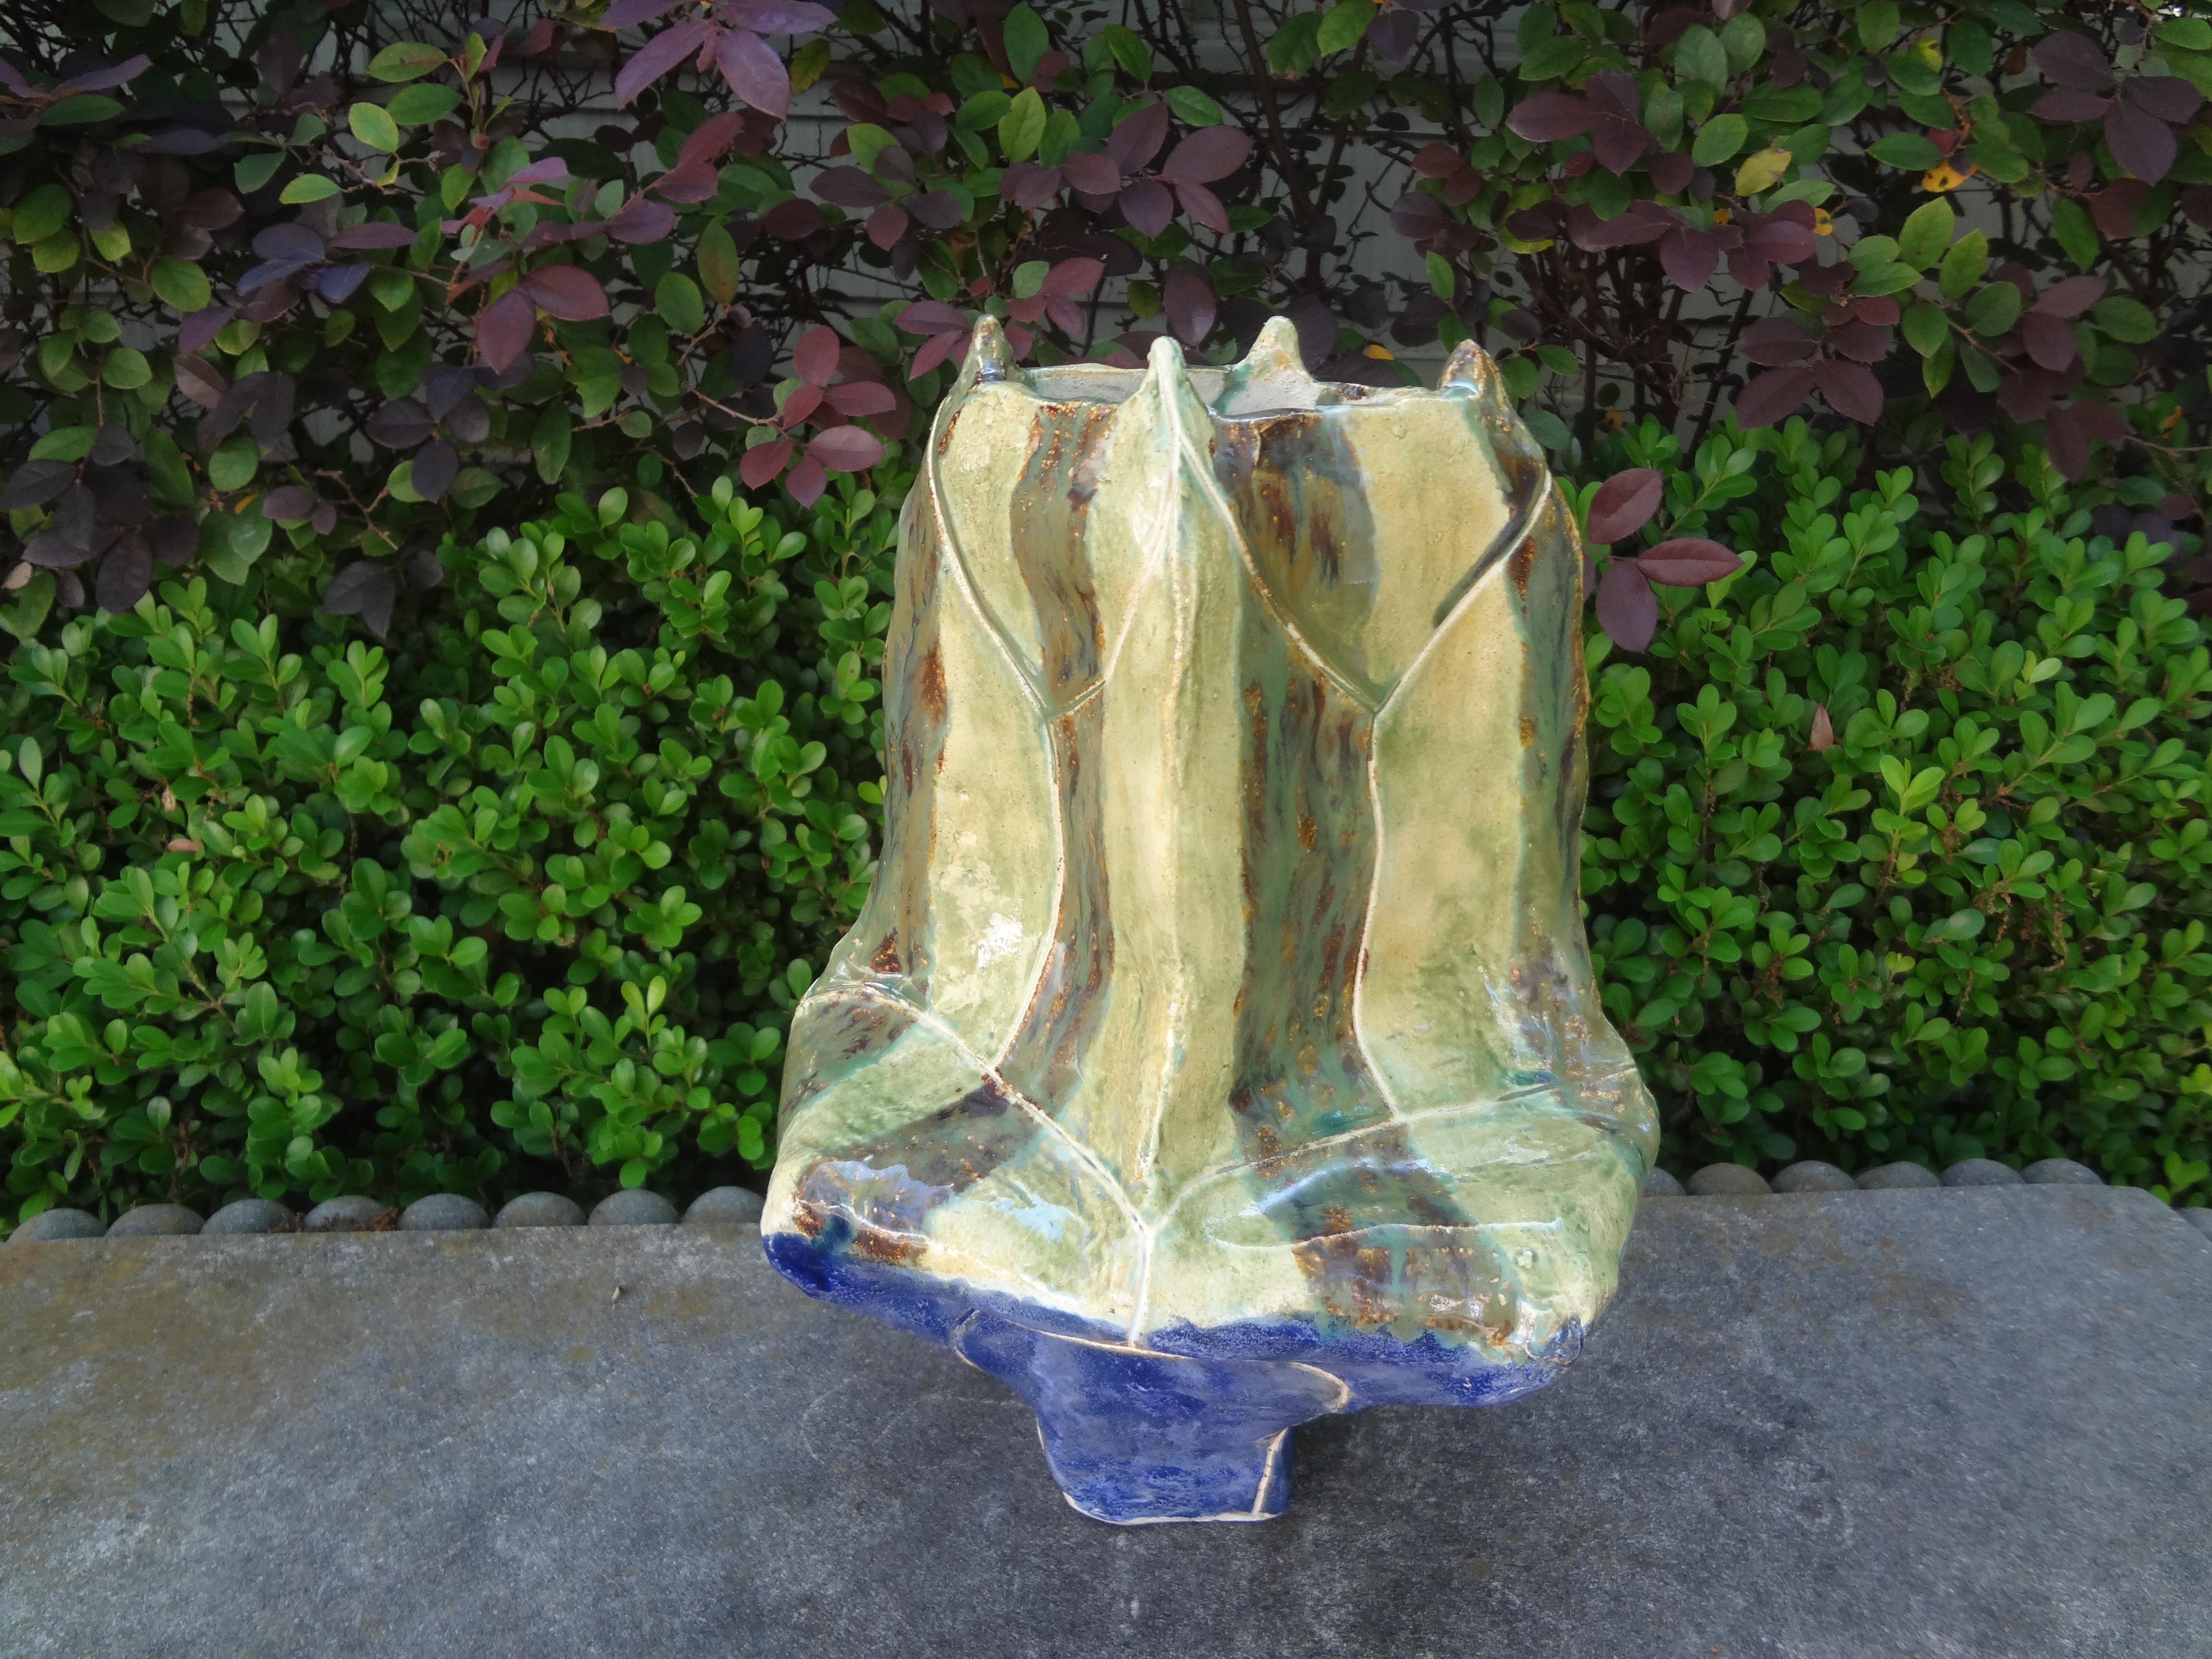 Vase aus der Mitte des Jahrhunderts aus glasierter Studio-Keramik.
Diese formschöne, glasierte Vintage-Vase von Studio Pottery ist eine fantastische Kombination aus Chartreuse-Grün und Blau. Hervorragend geeignet als eigenständige Vase oder in einer